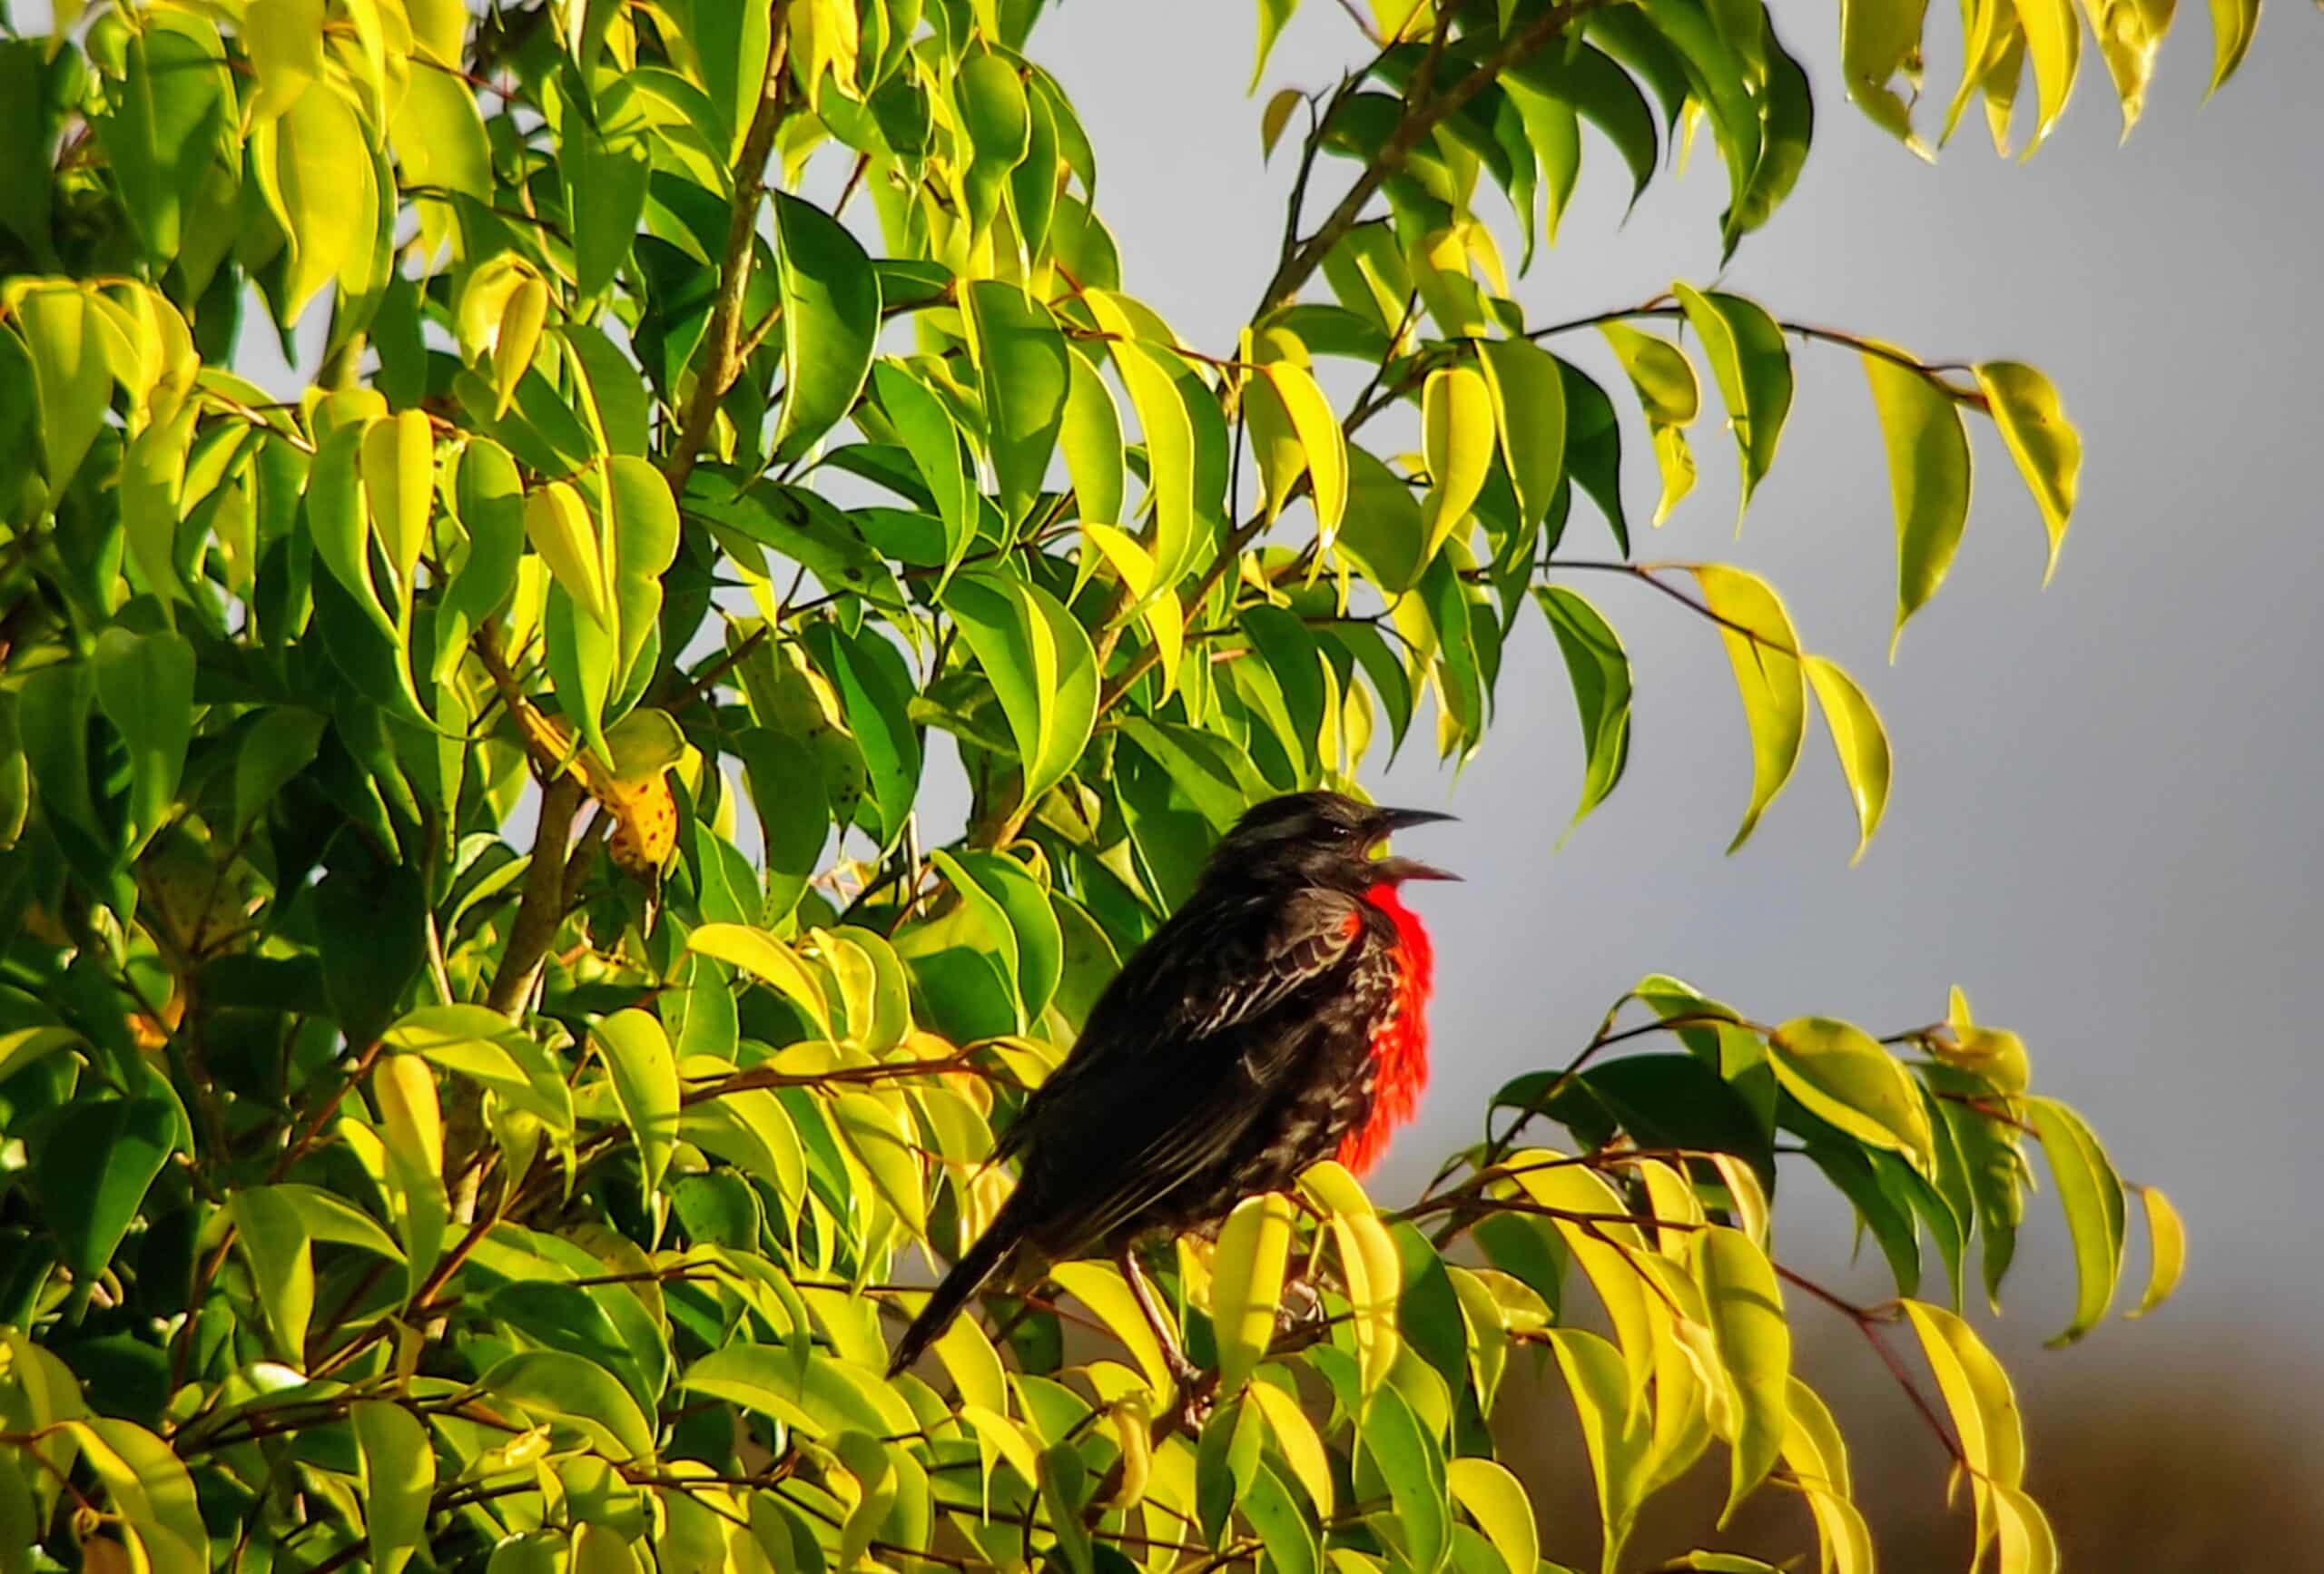 Pastorero pechirojo/Red breasted Black bird, Provincia de Napo| ©Jacqueline Granda